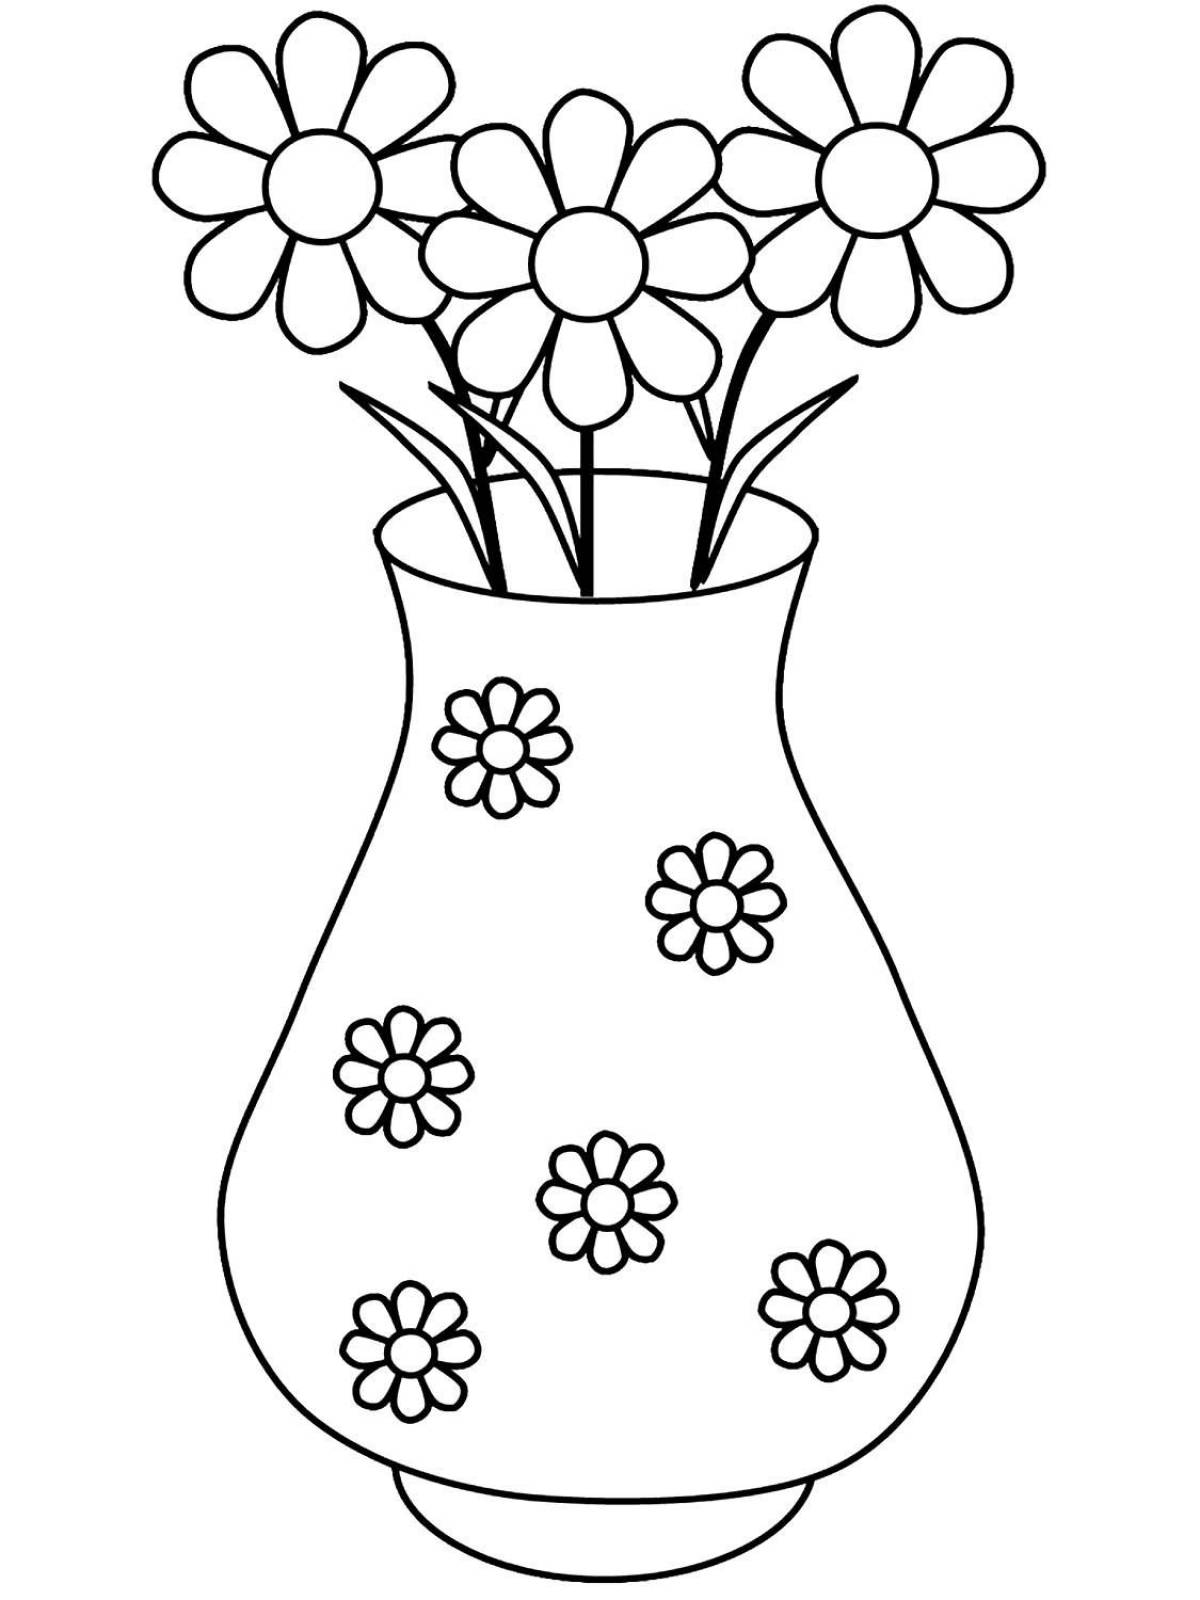 Shining flower vase for children 8-9 years old